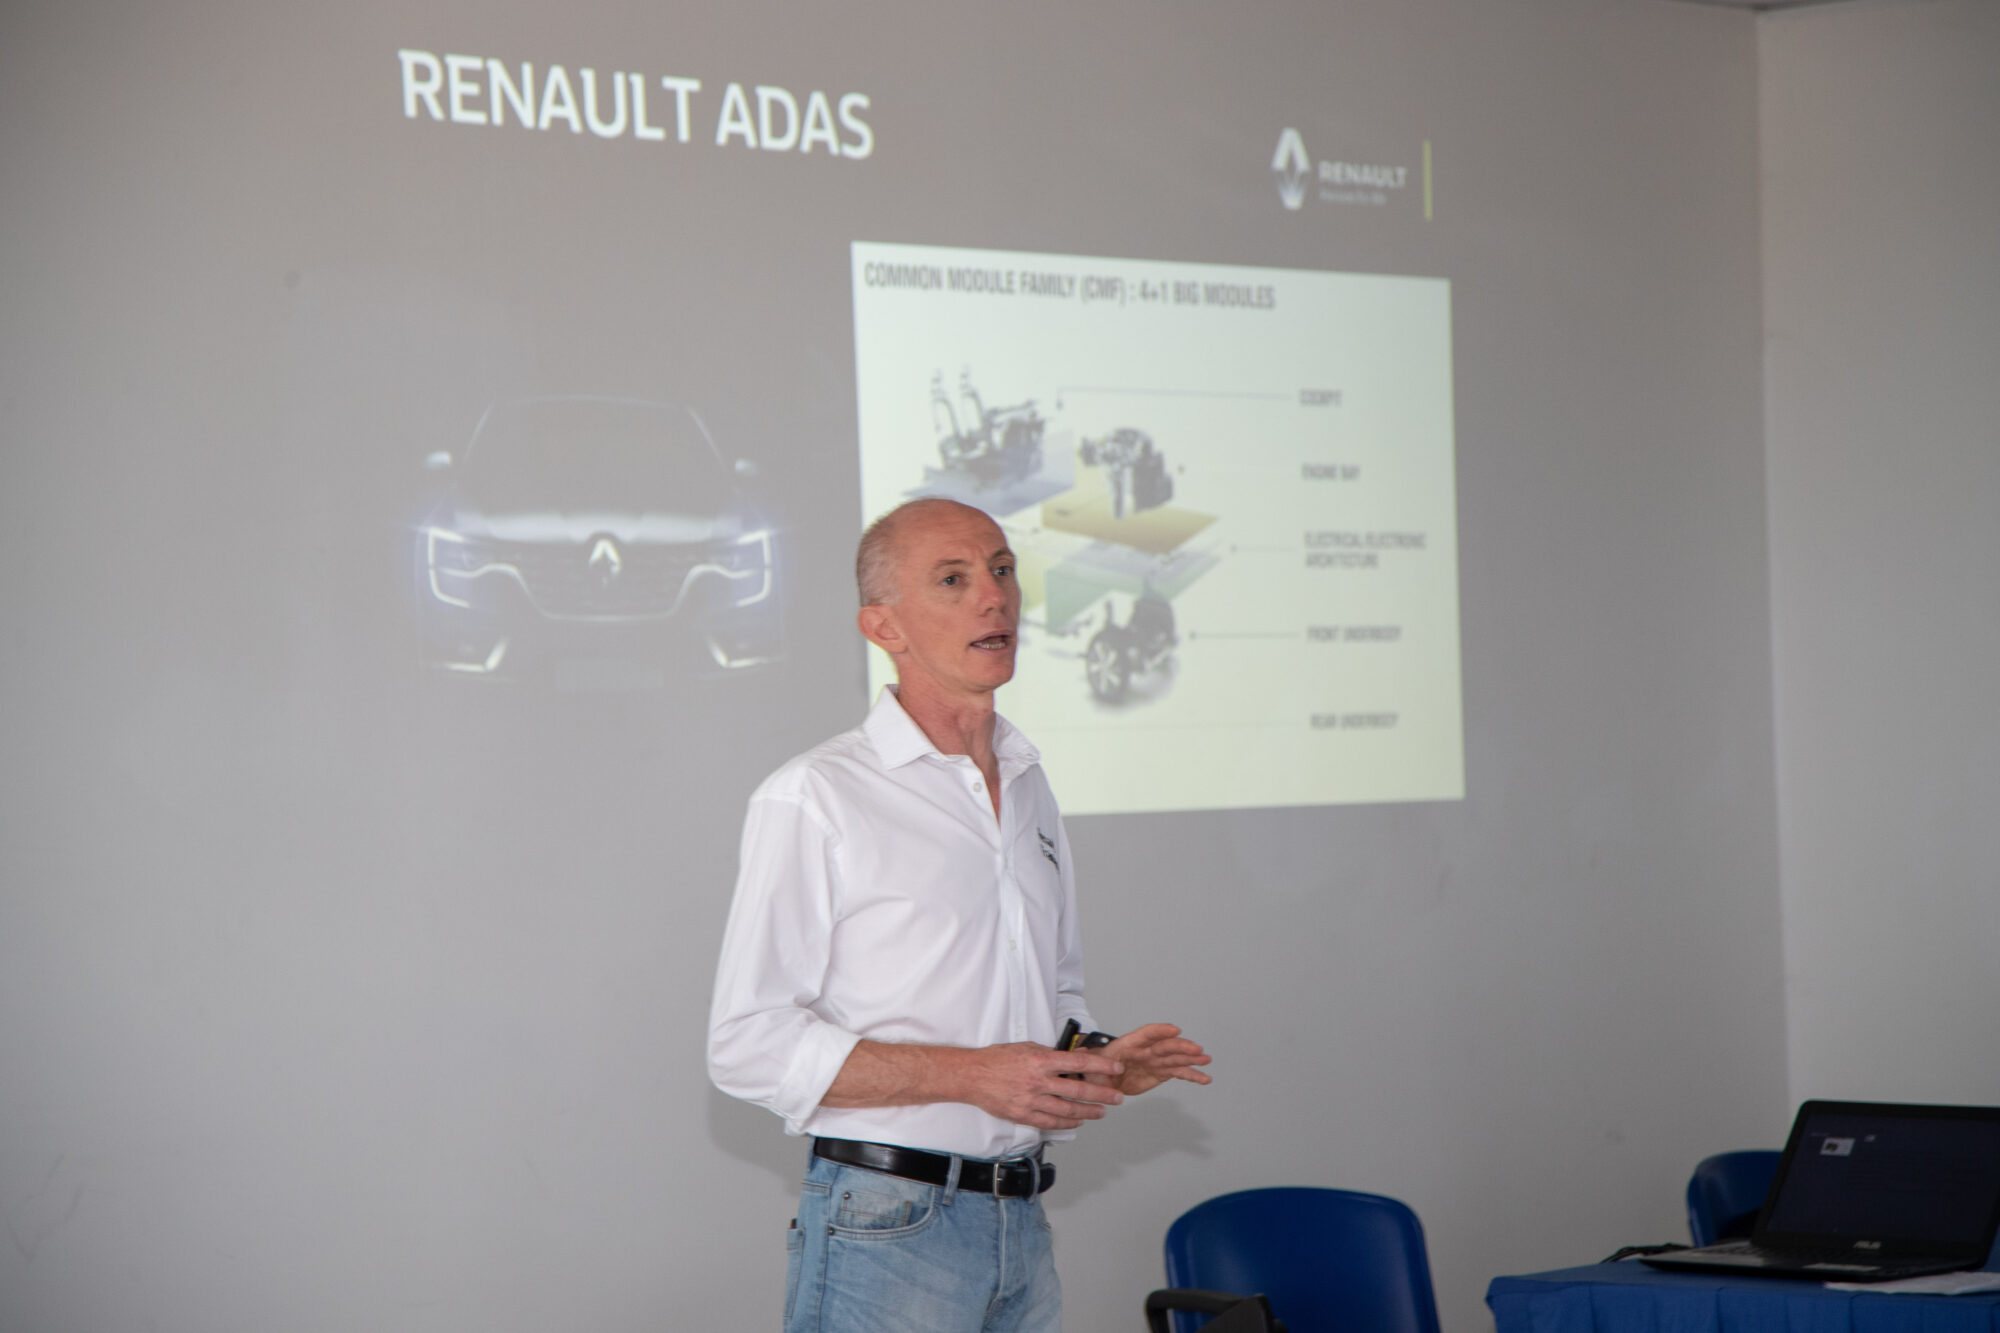 CS- Renault, da sempre innovazione tecnologica per tutti